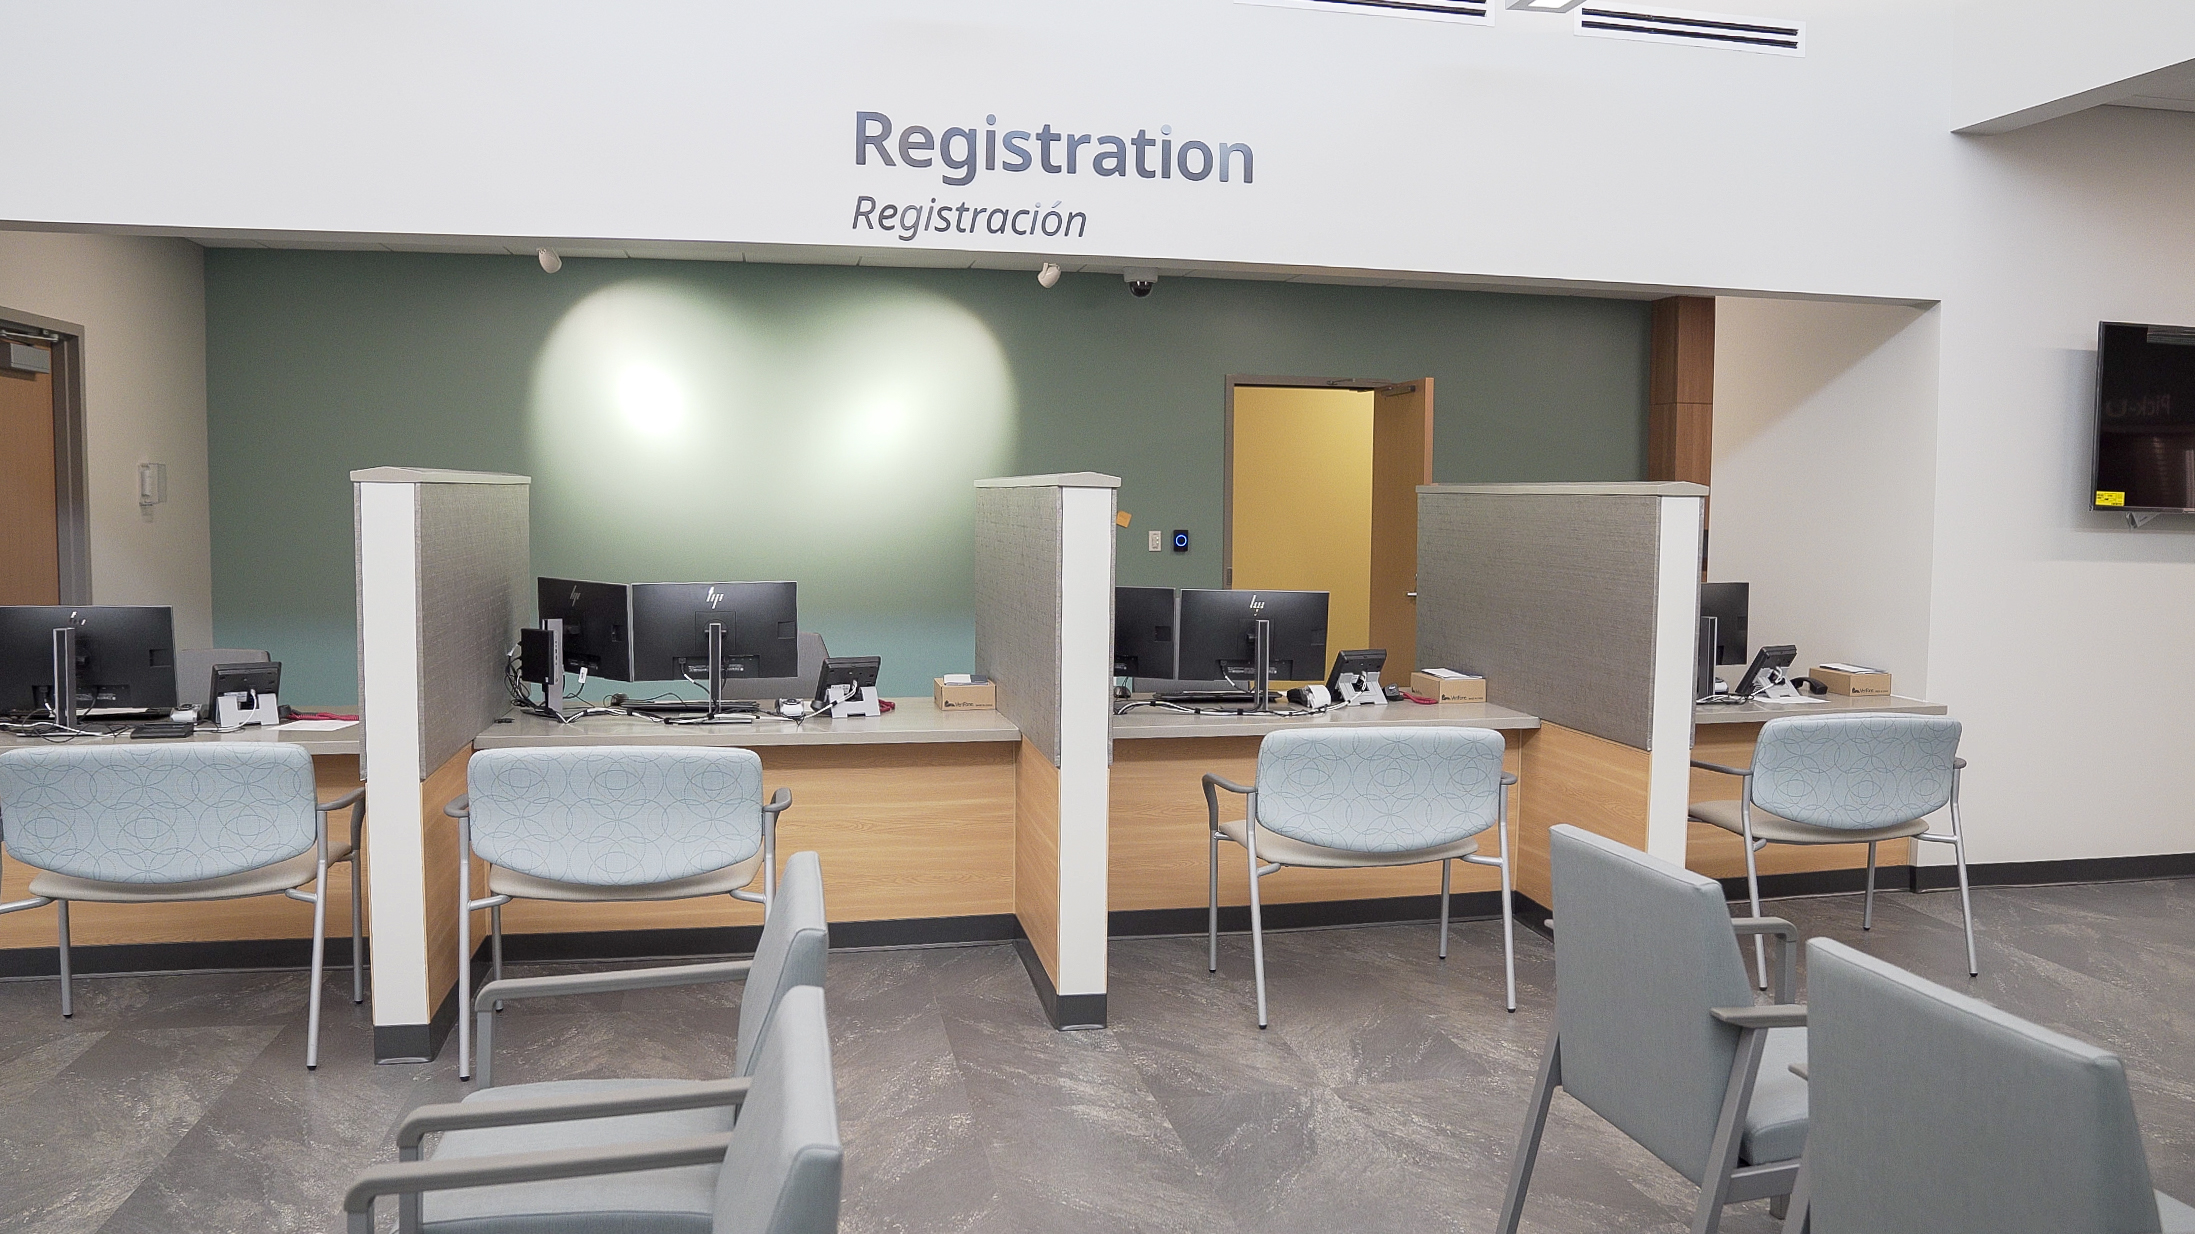 registration desk inside a medical health center